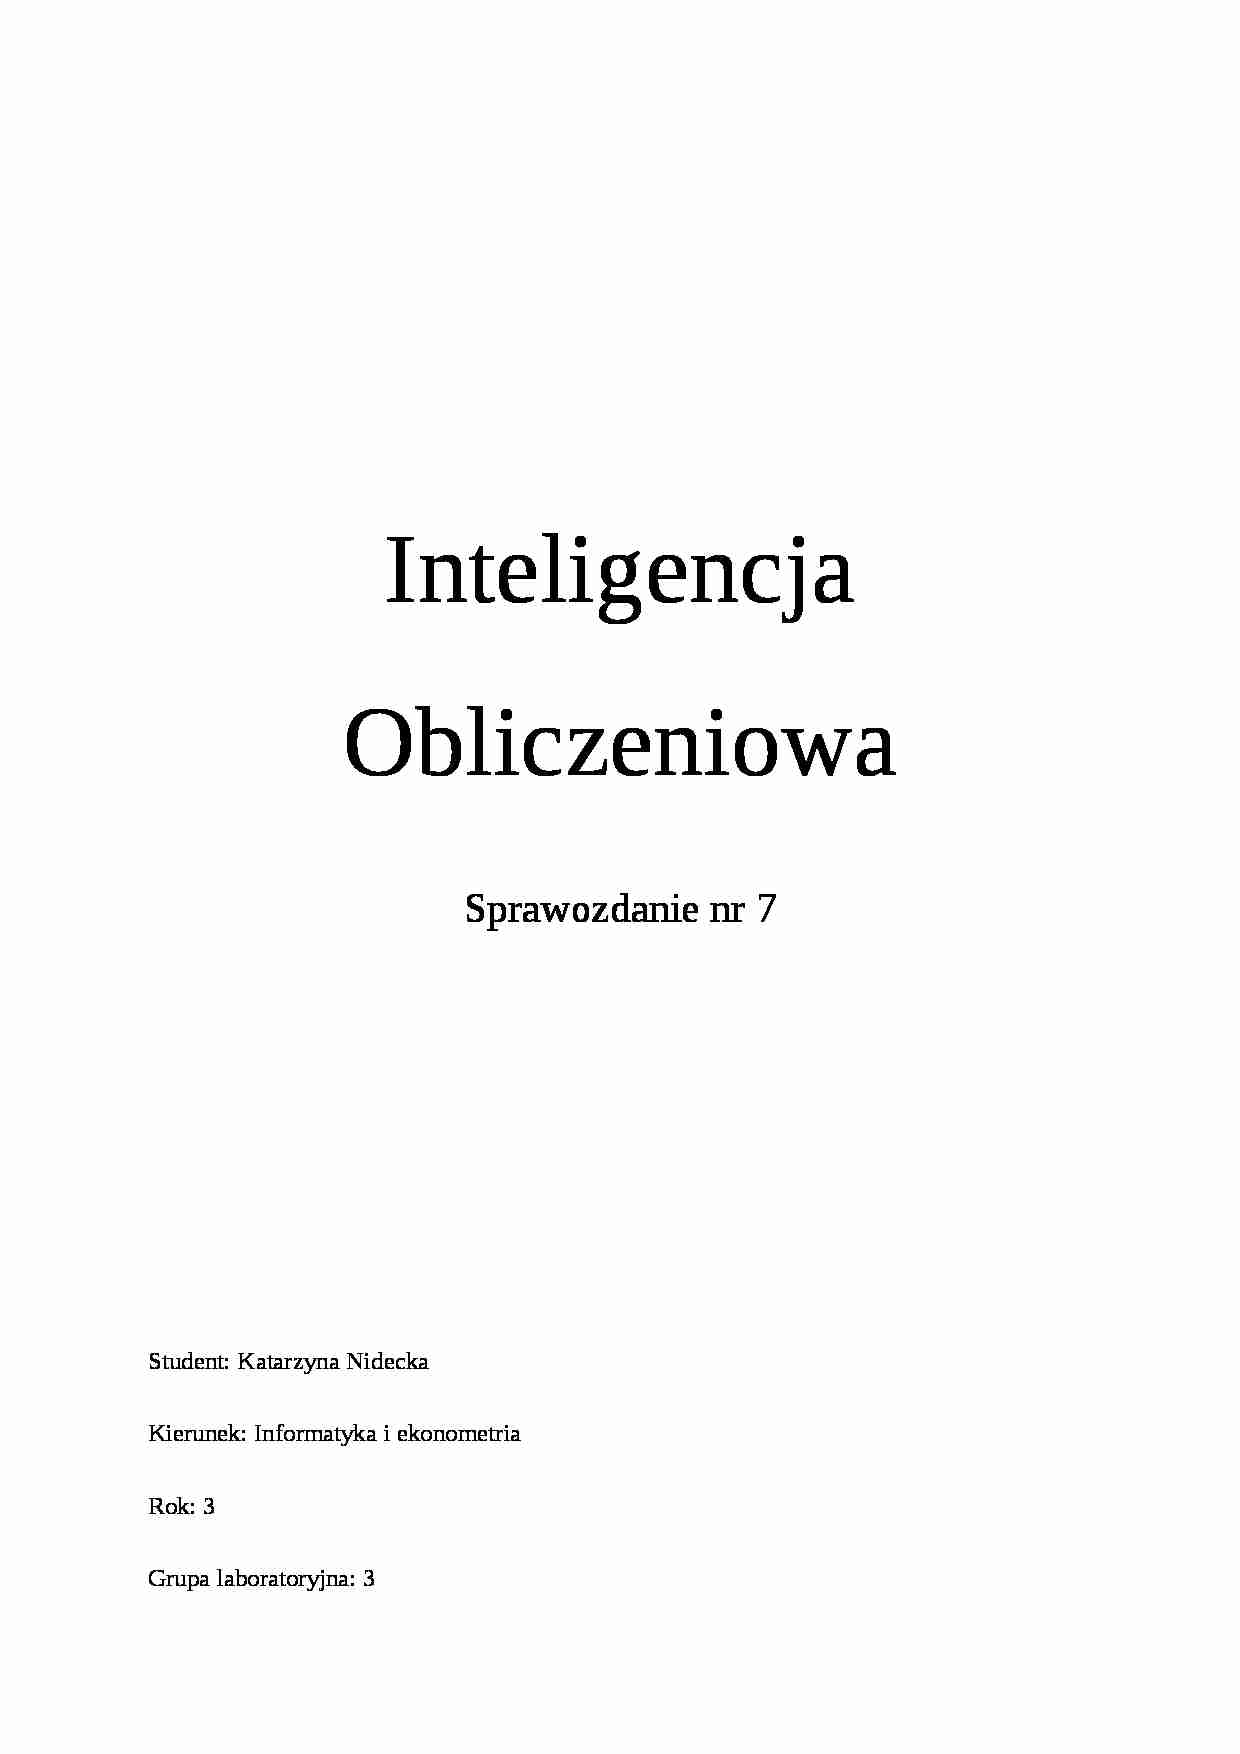 Inteligencja Obliczeniowa-Sprawozdanie nr 7 - strona 1